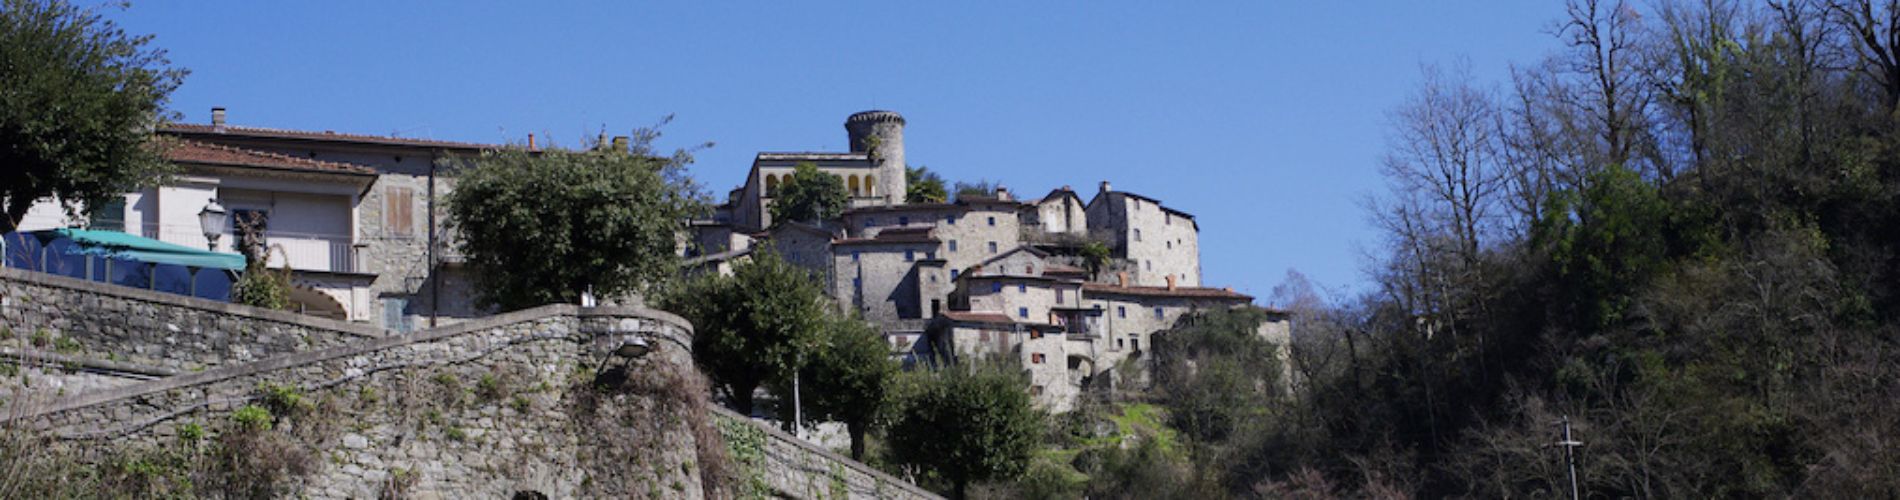 Panorama Bagnone